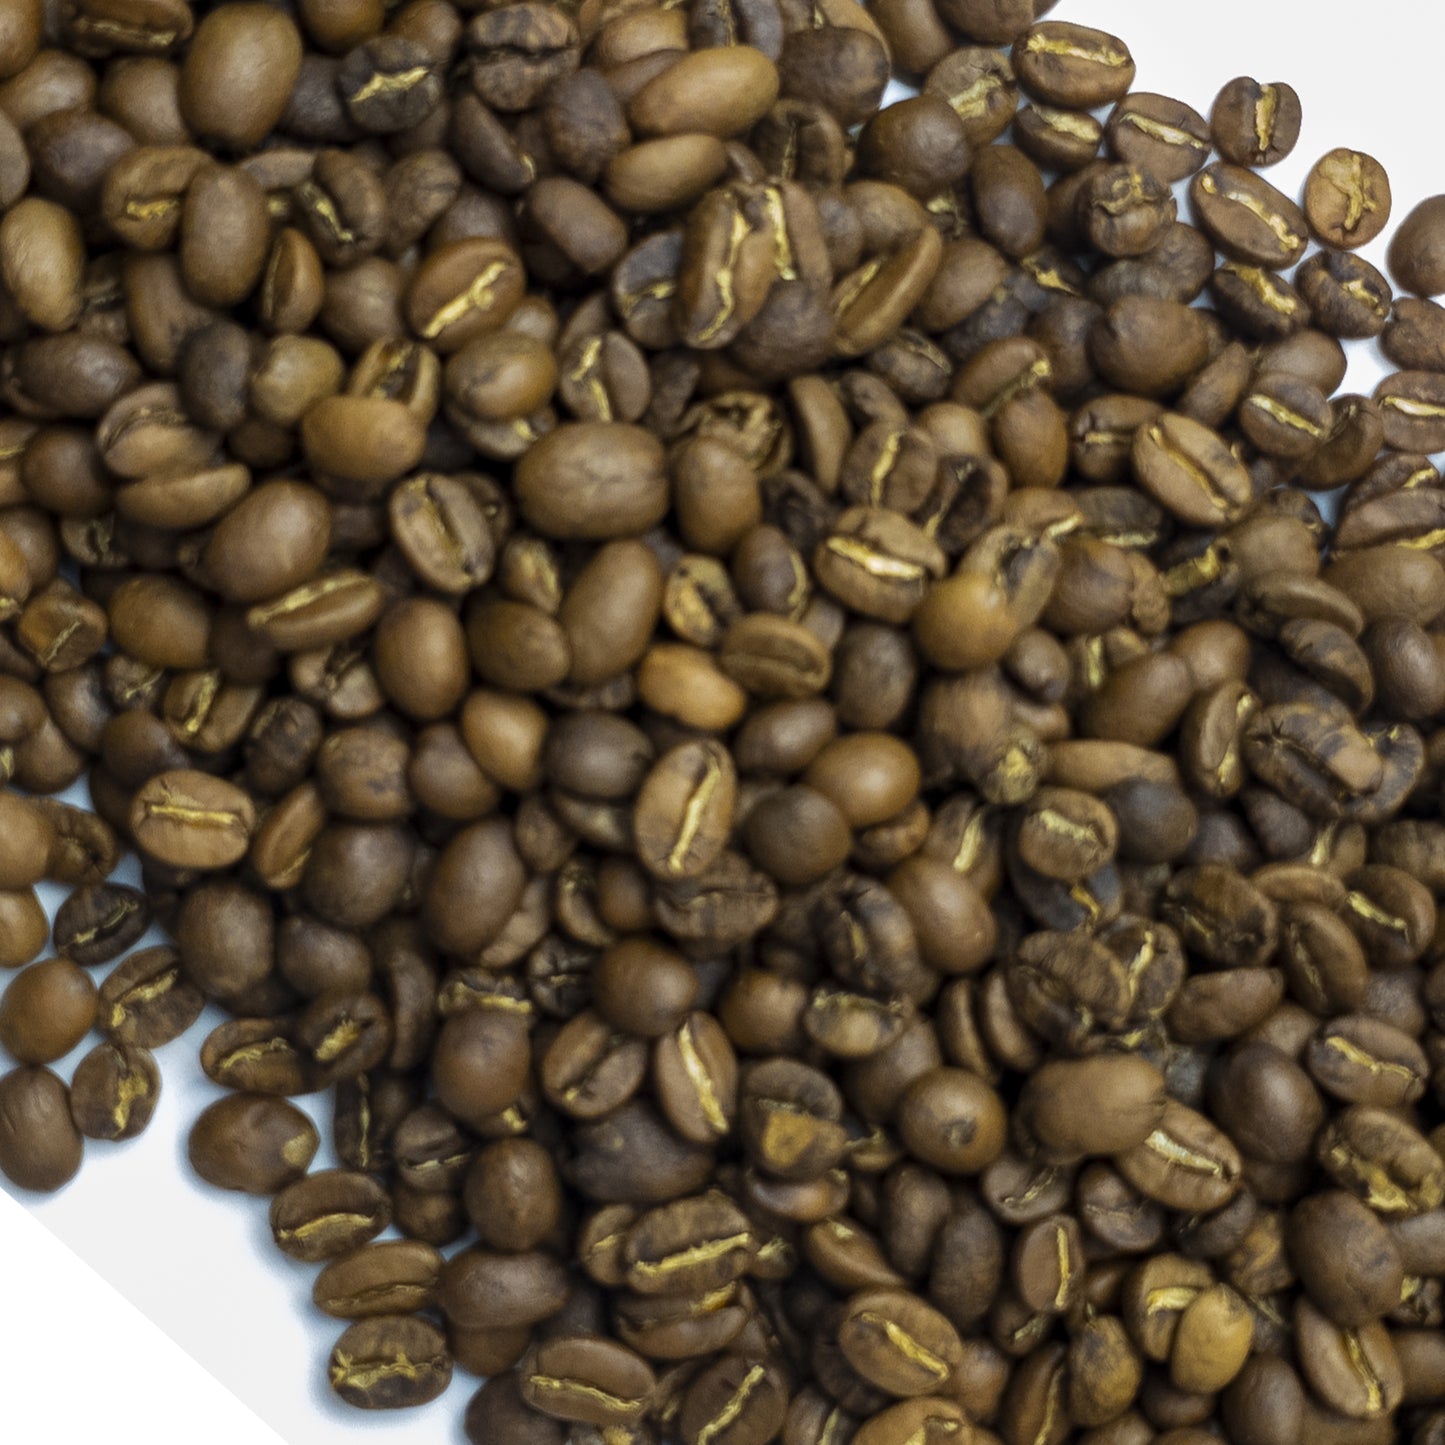 
                  
                    Ozark | Ground Coffee | Light/Medium Roast | Rose Rock Coffee | Air Roasted | 12oz | 1lb | 5lb | Sample
                  
                